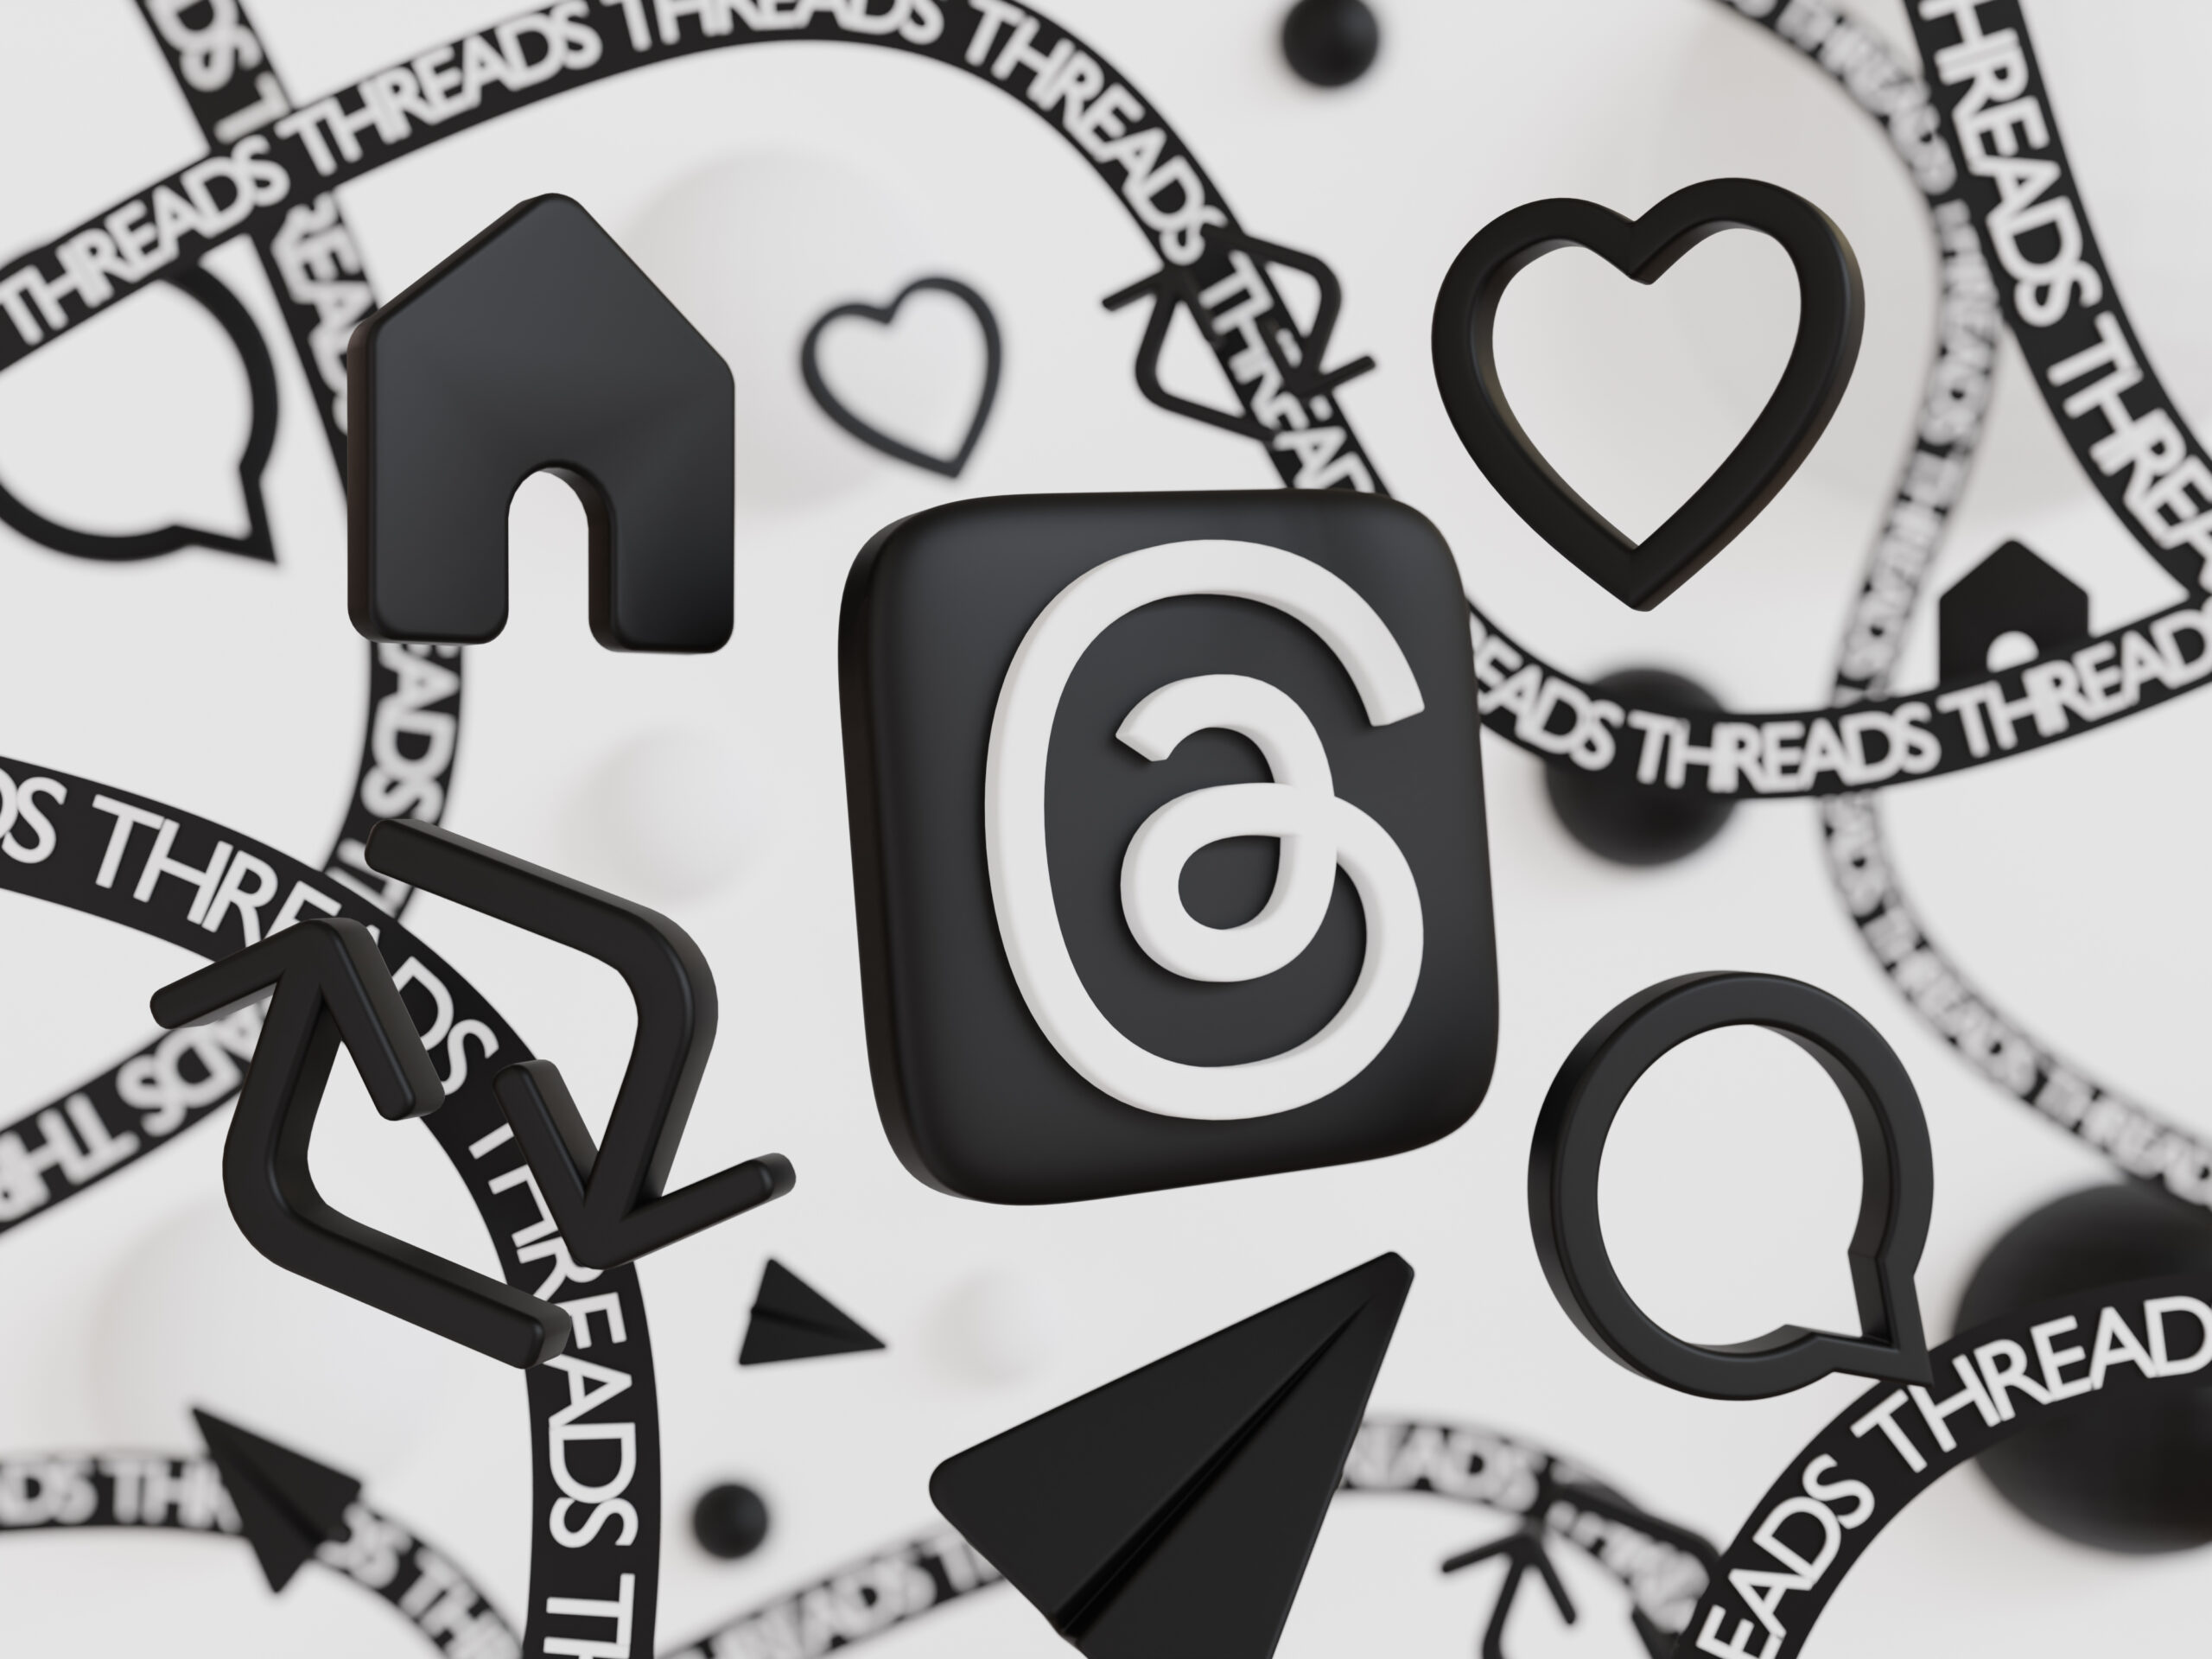 Image en noir et blanc avec le logo Threads de Meta, des likes et une icône de partage, des icônes de bulles de conversation et Threads écrit en plusieurs fois en forme de ficelles